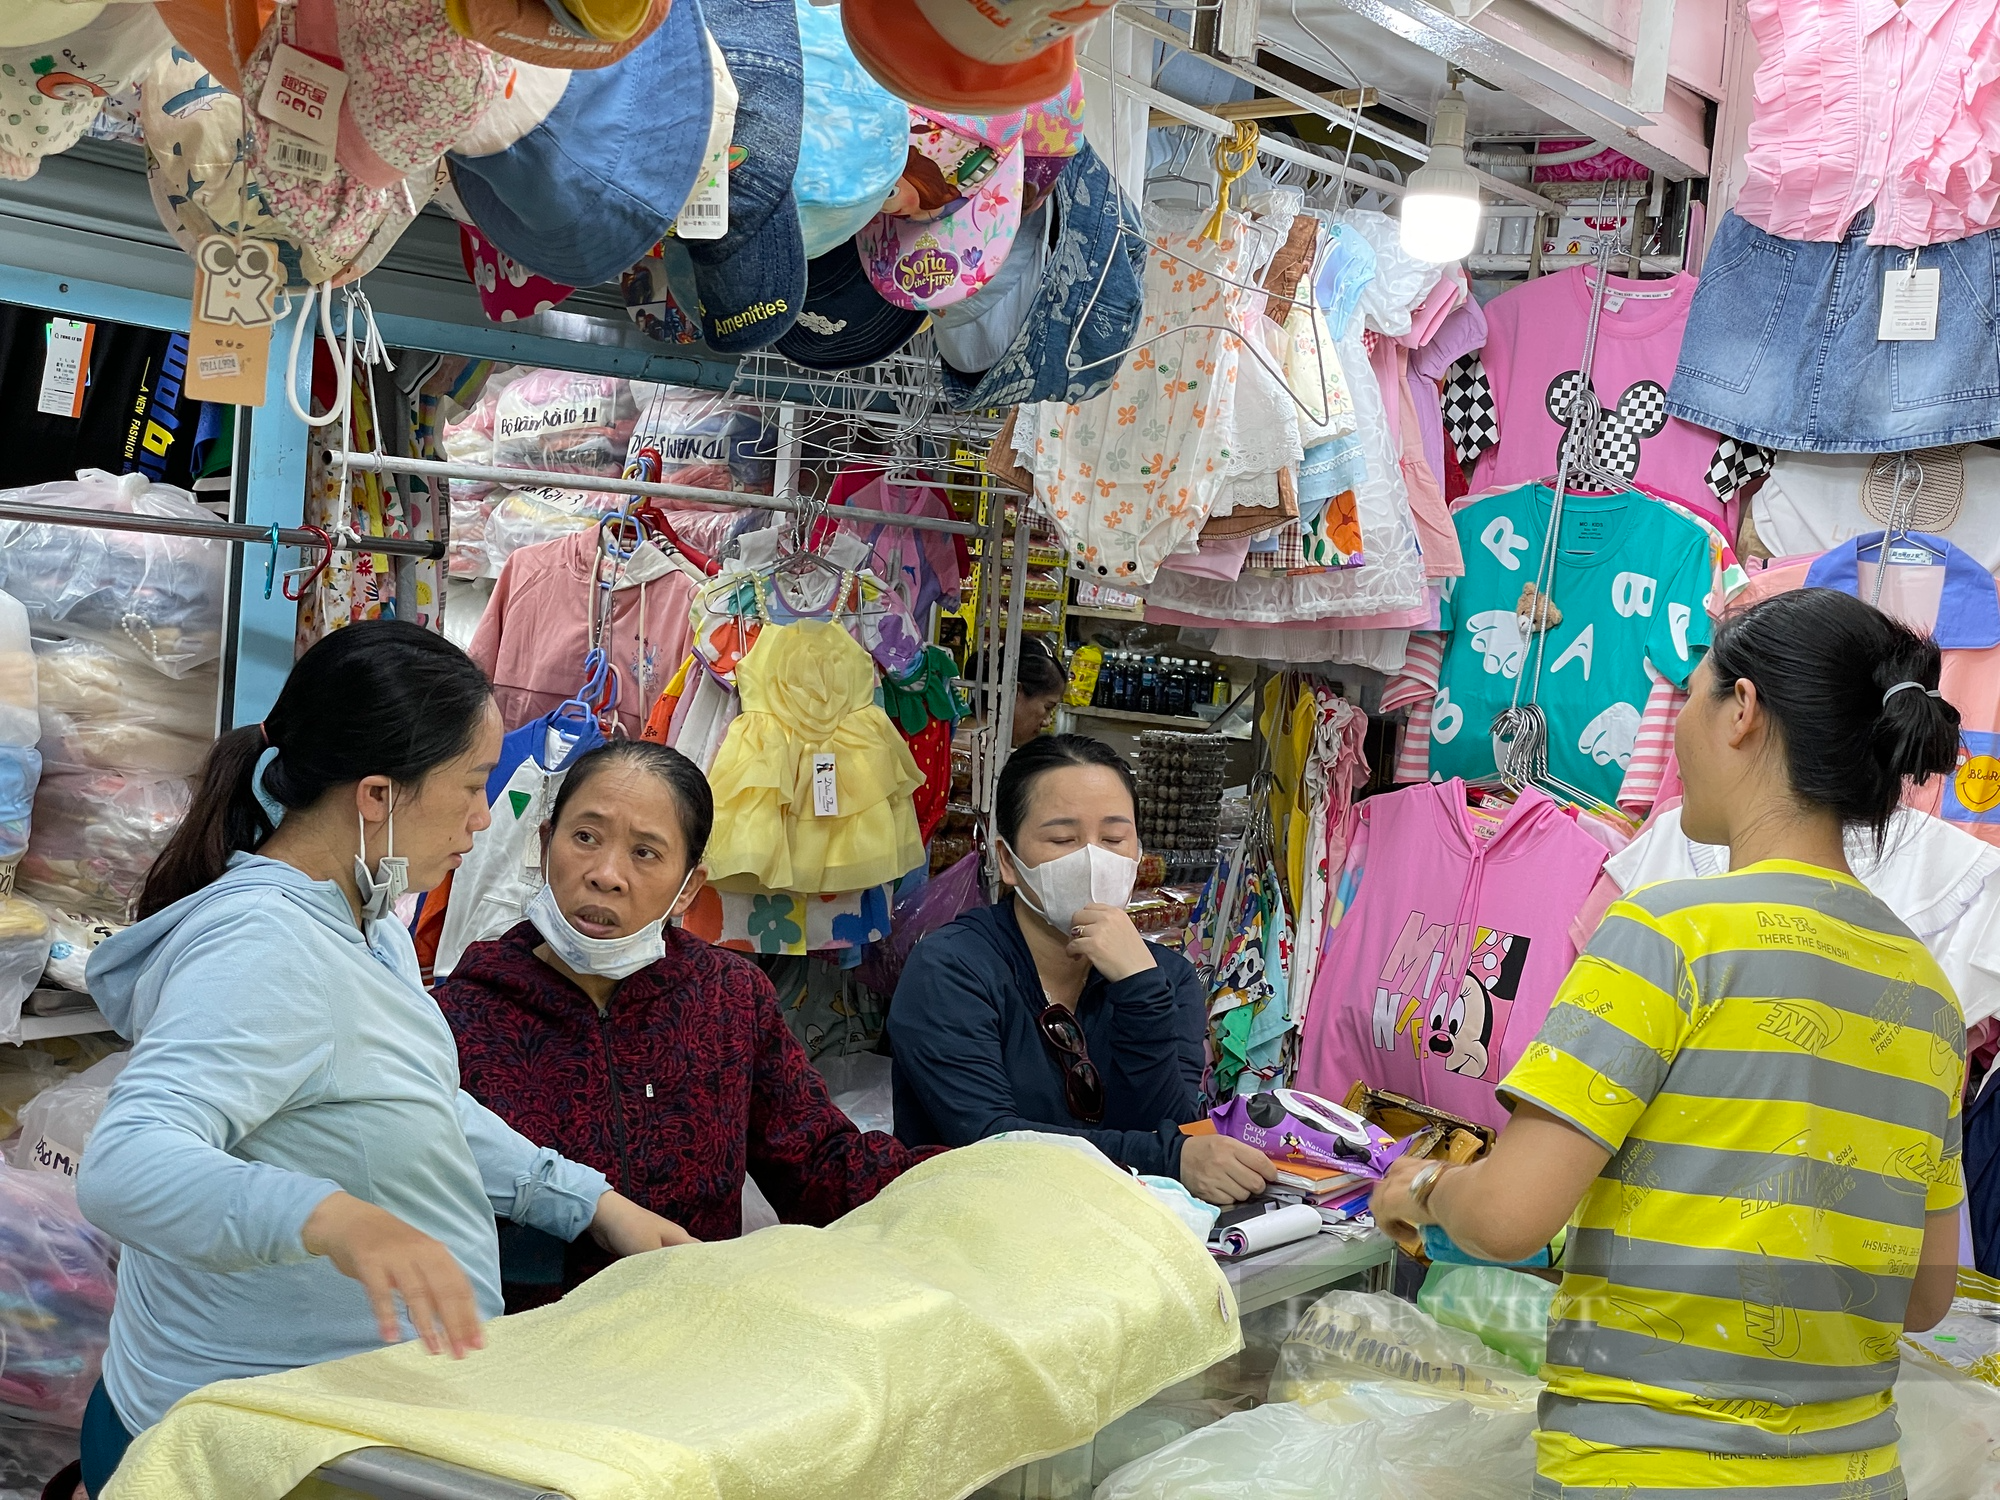 Tiểu thương chợ Sài Gòn xếp hàng dài chờ khách, chiều đóng cửa về sớm vì ế - Ảnh 6.